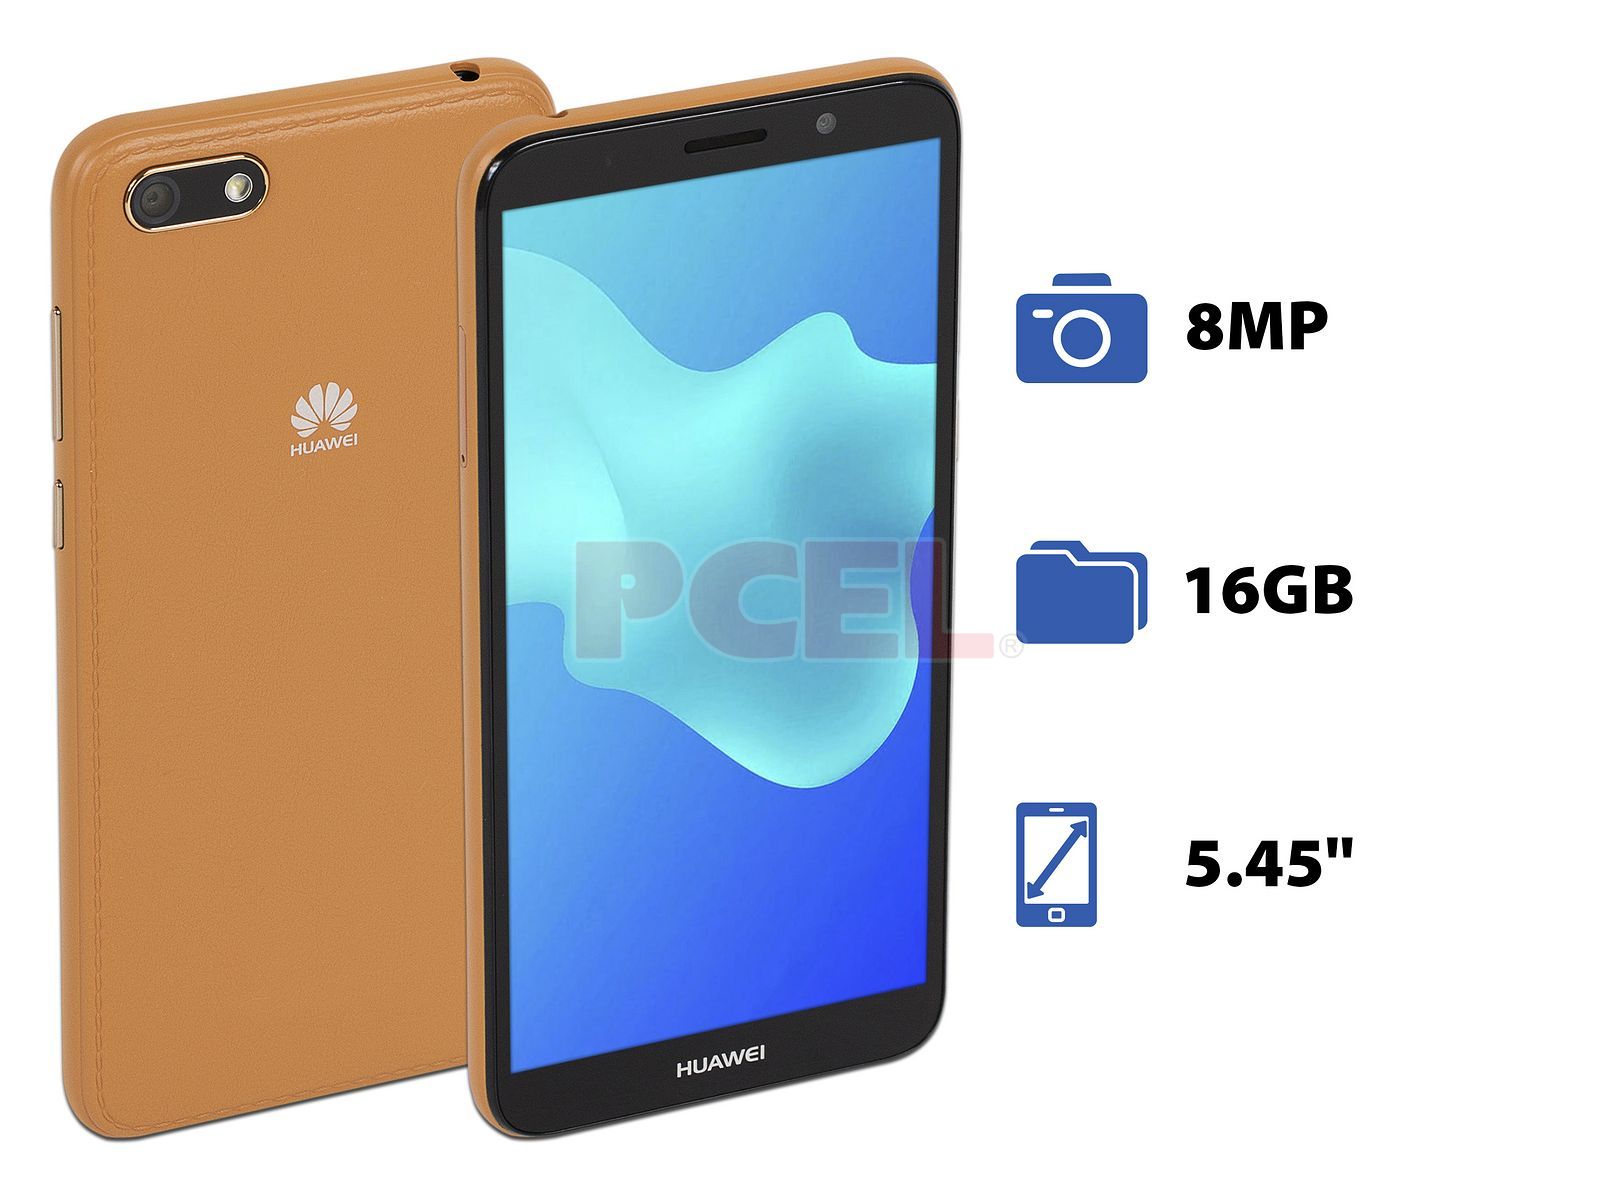 Smartphone Huawei Y5 Neo: Procesador Mediatek MT6739, Quad core (),  Memoria RAM de 1GB, Almacenamiento de 16GB (expandible con microSD),  Pantalla de 